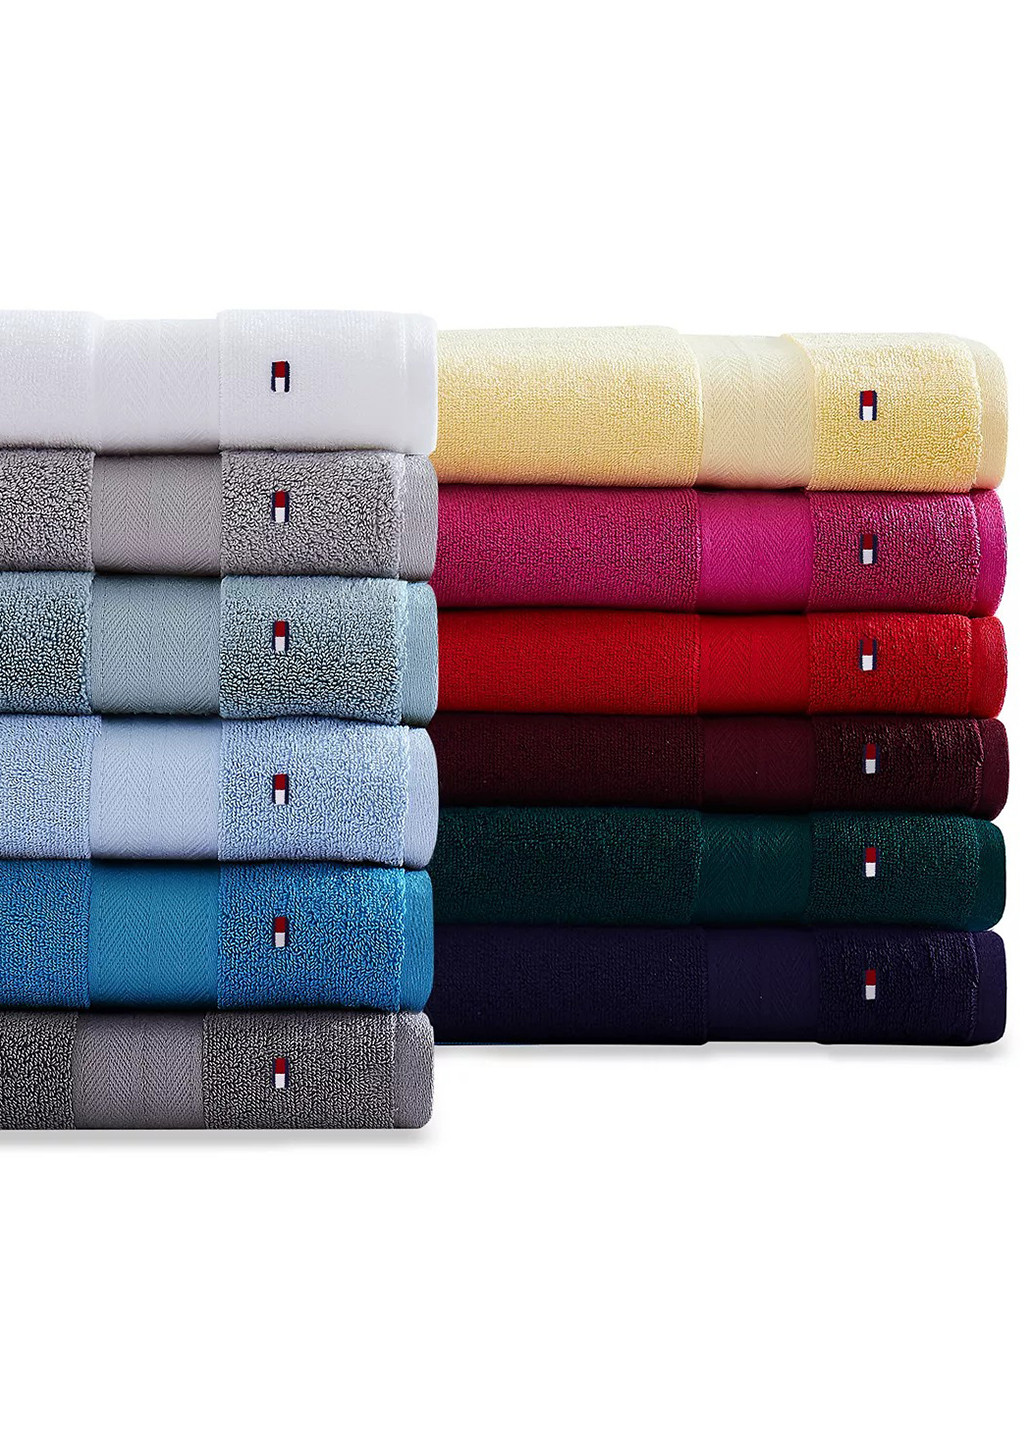 Tommy Hilfiger полотенце, 76х138 см однотонный серый производство - Индия